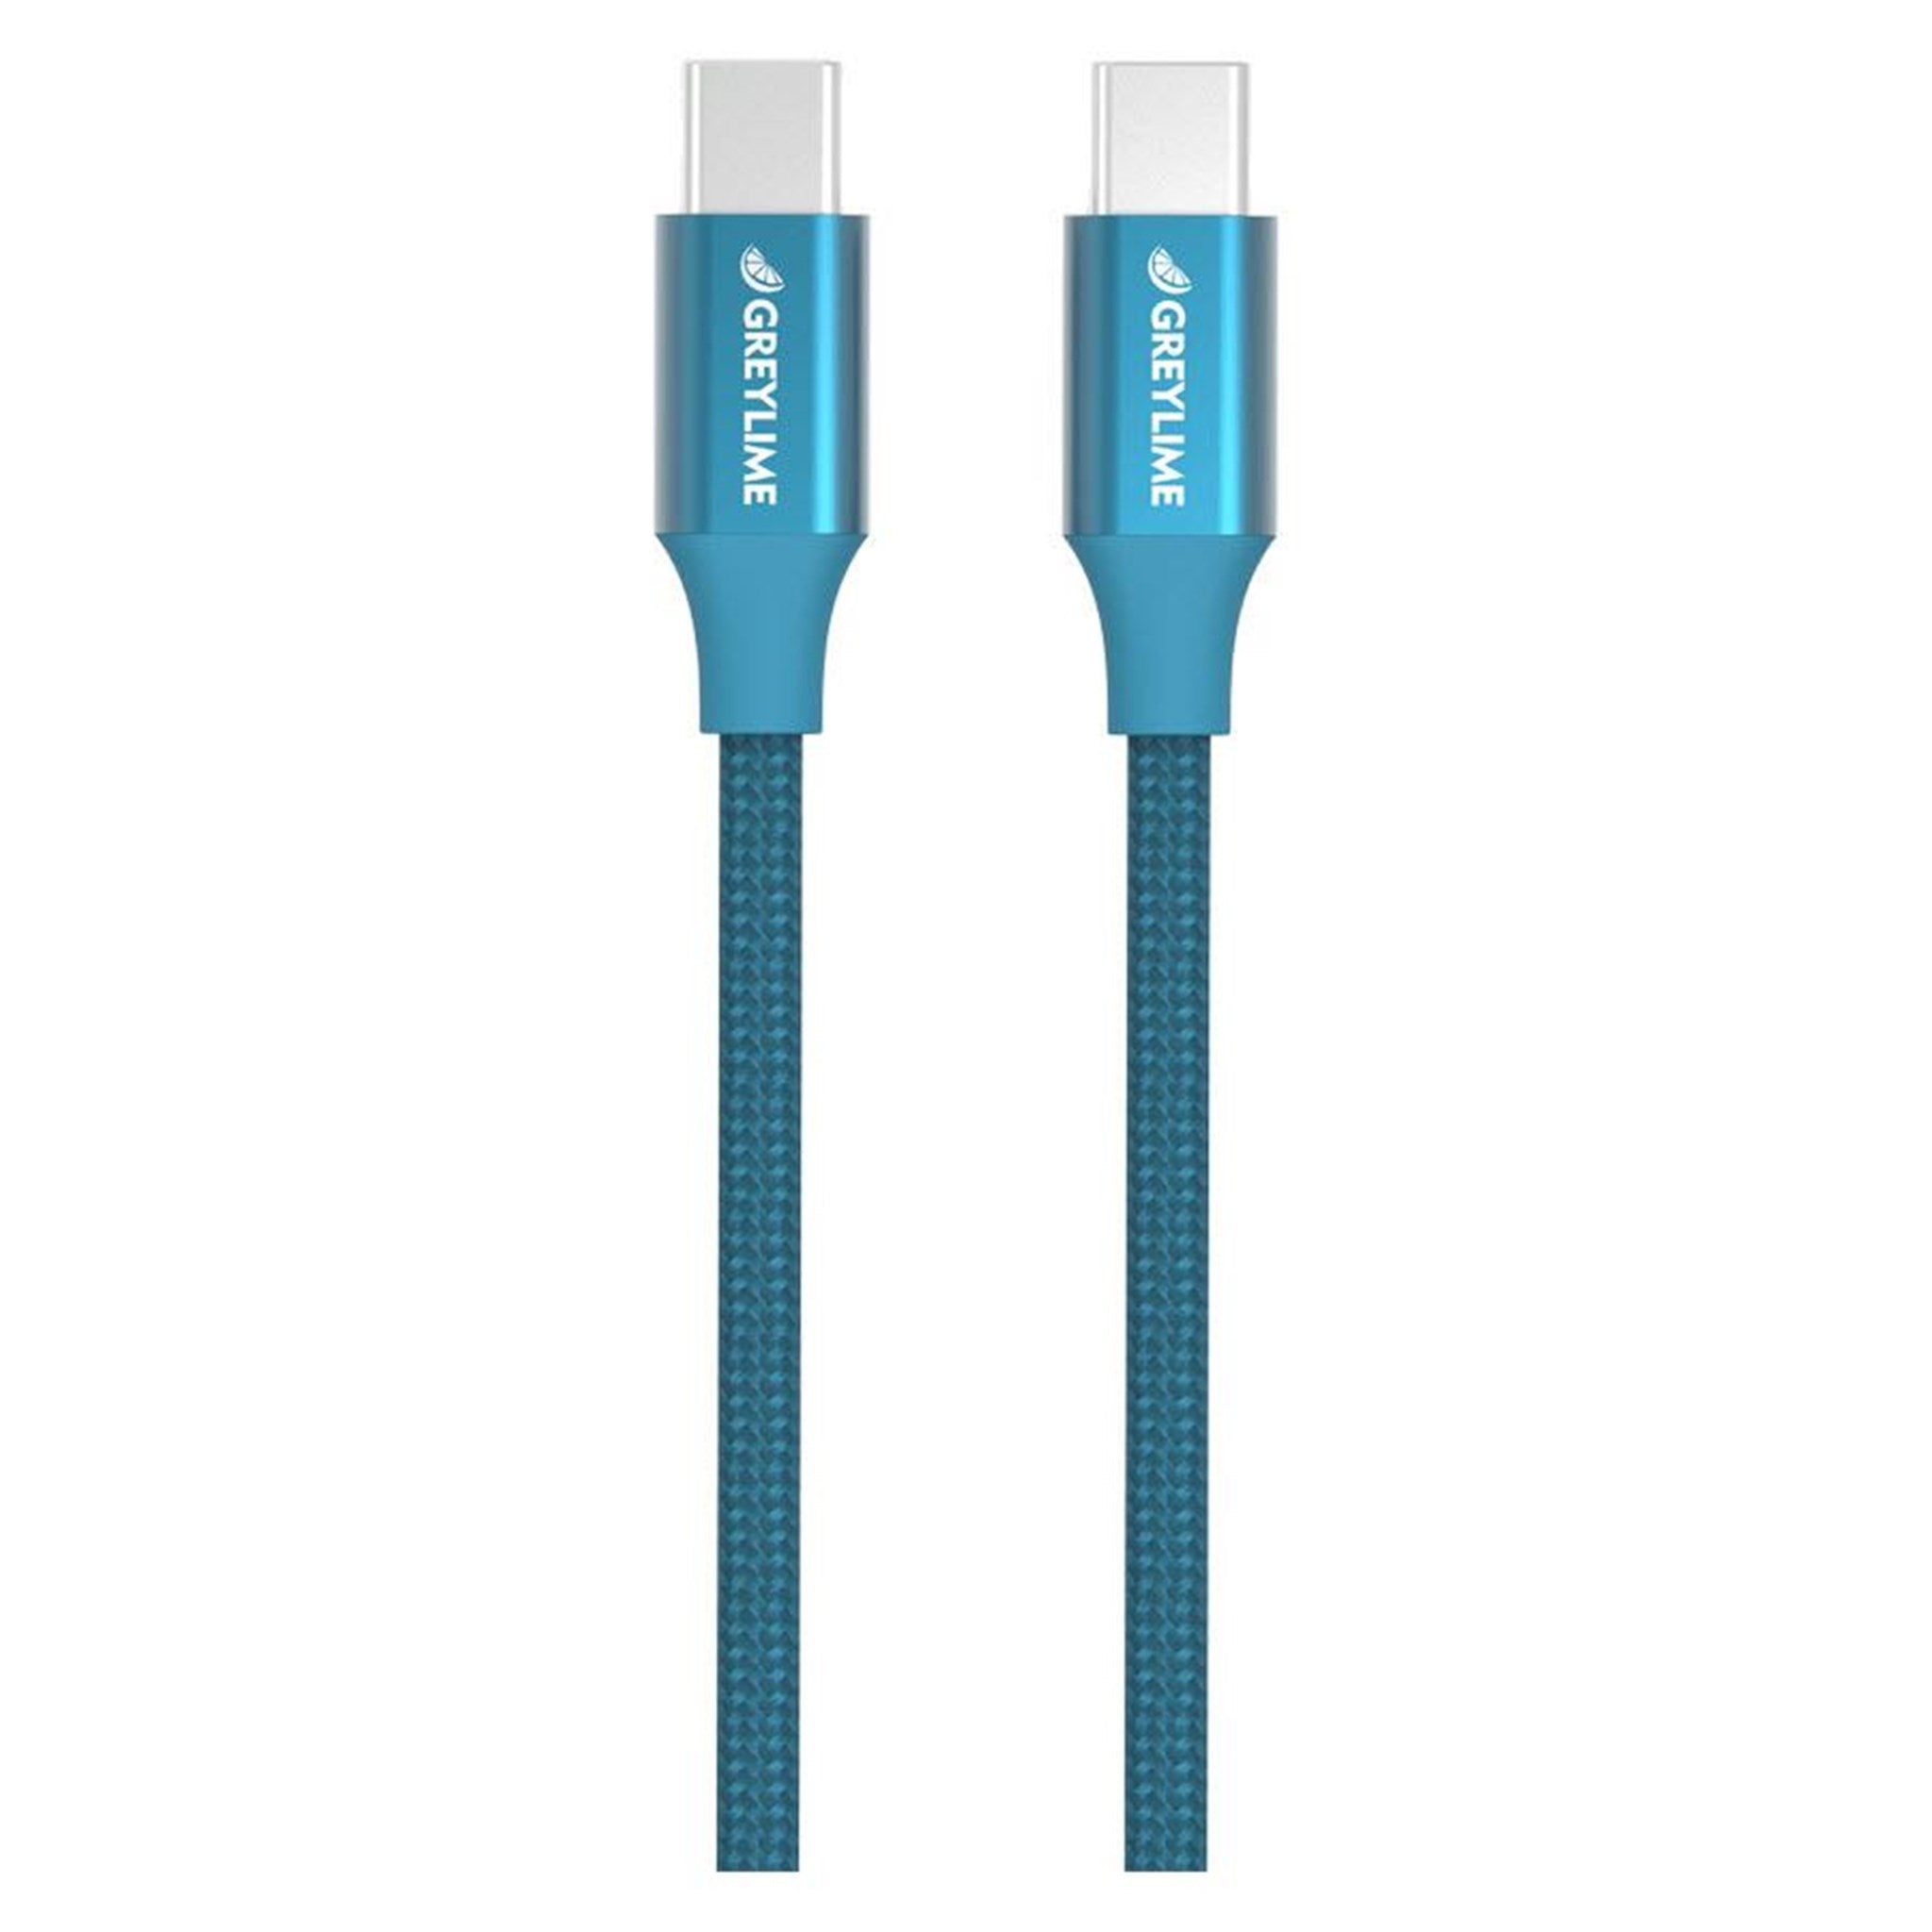 Billede af GreyLime Braided USB-C til USB-C kabel Blå 1 m hos Balar